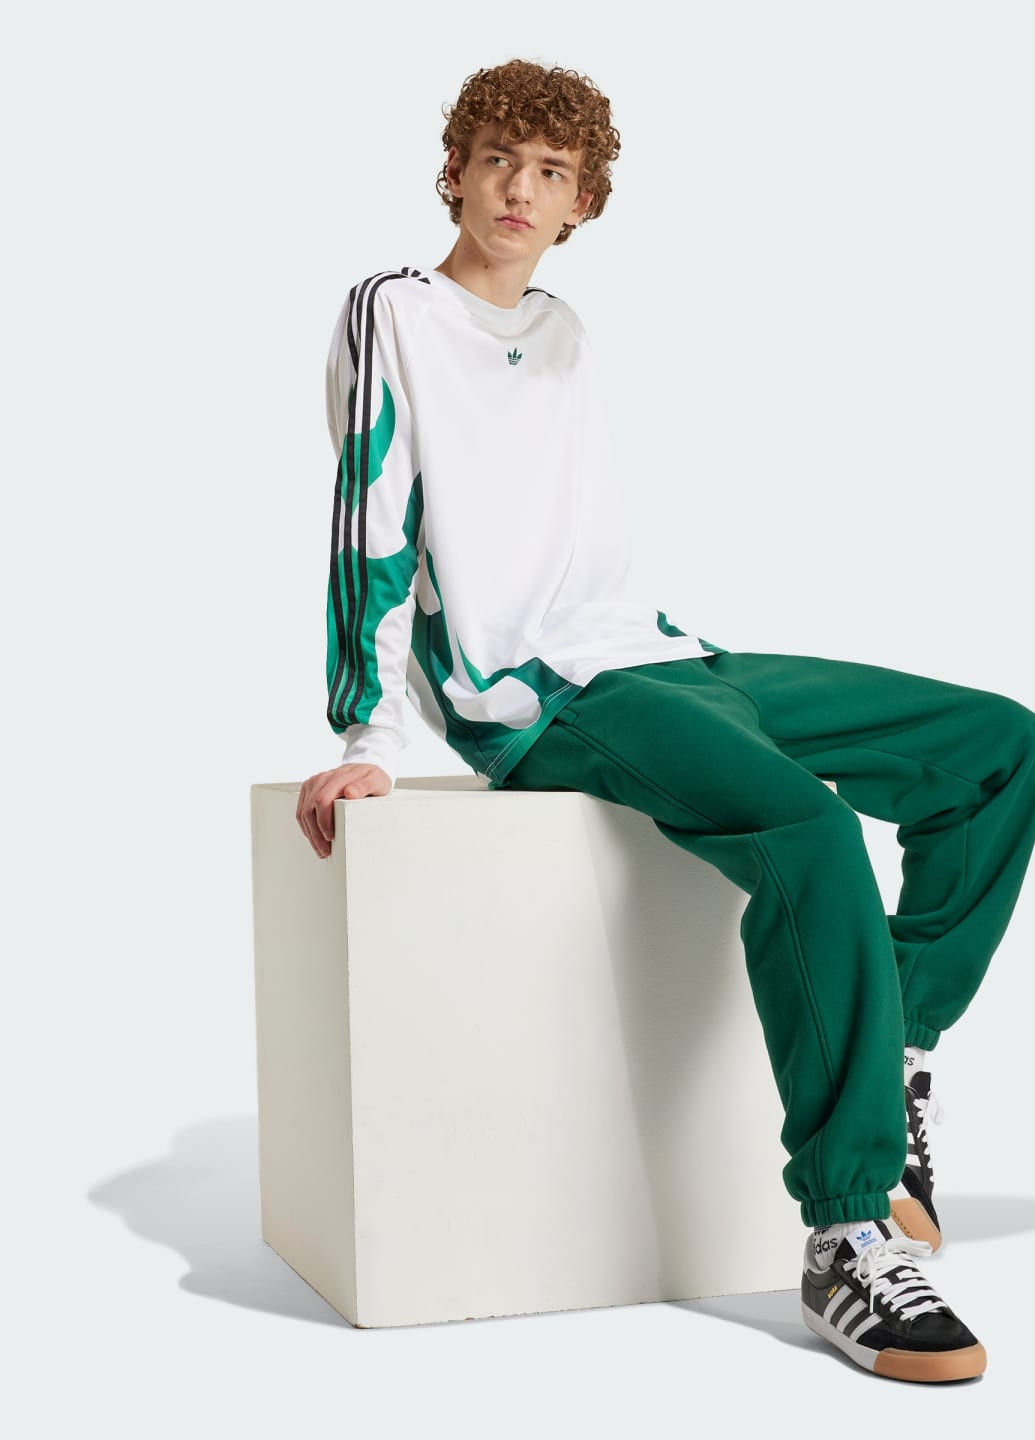 Зеленые спортивные демисезонные брюки adidas